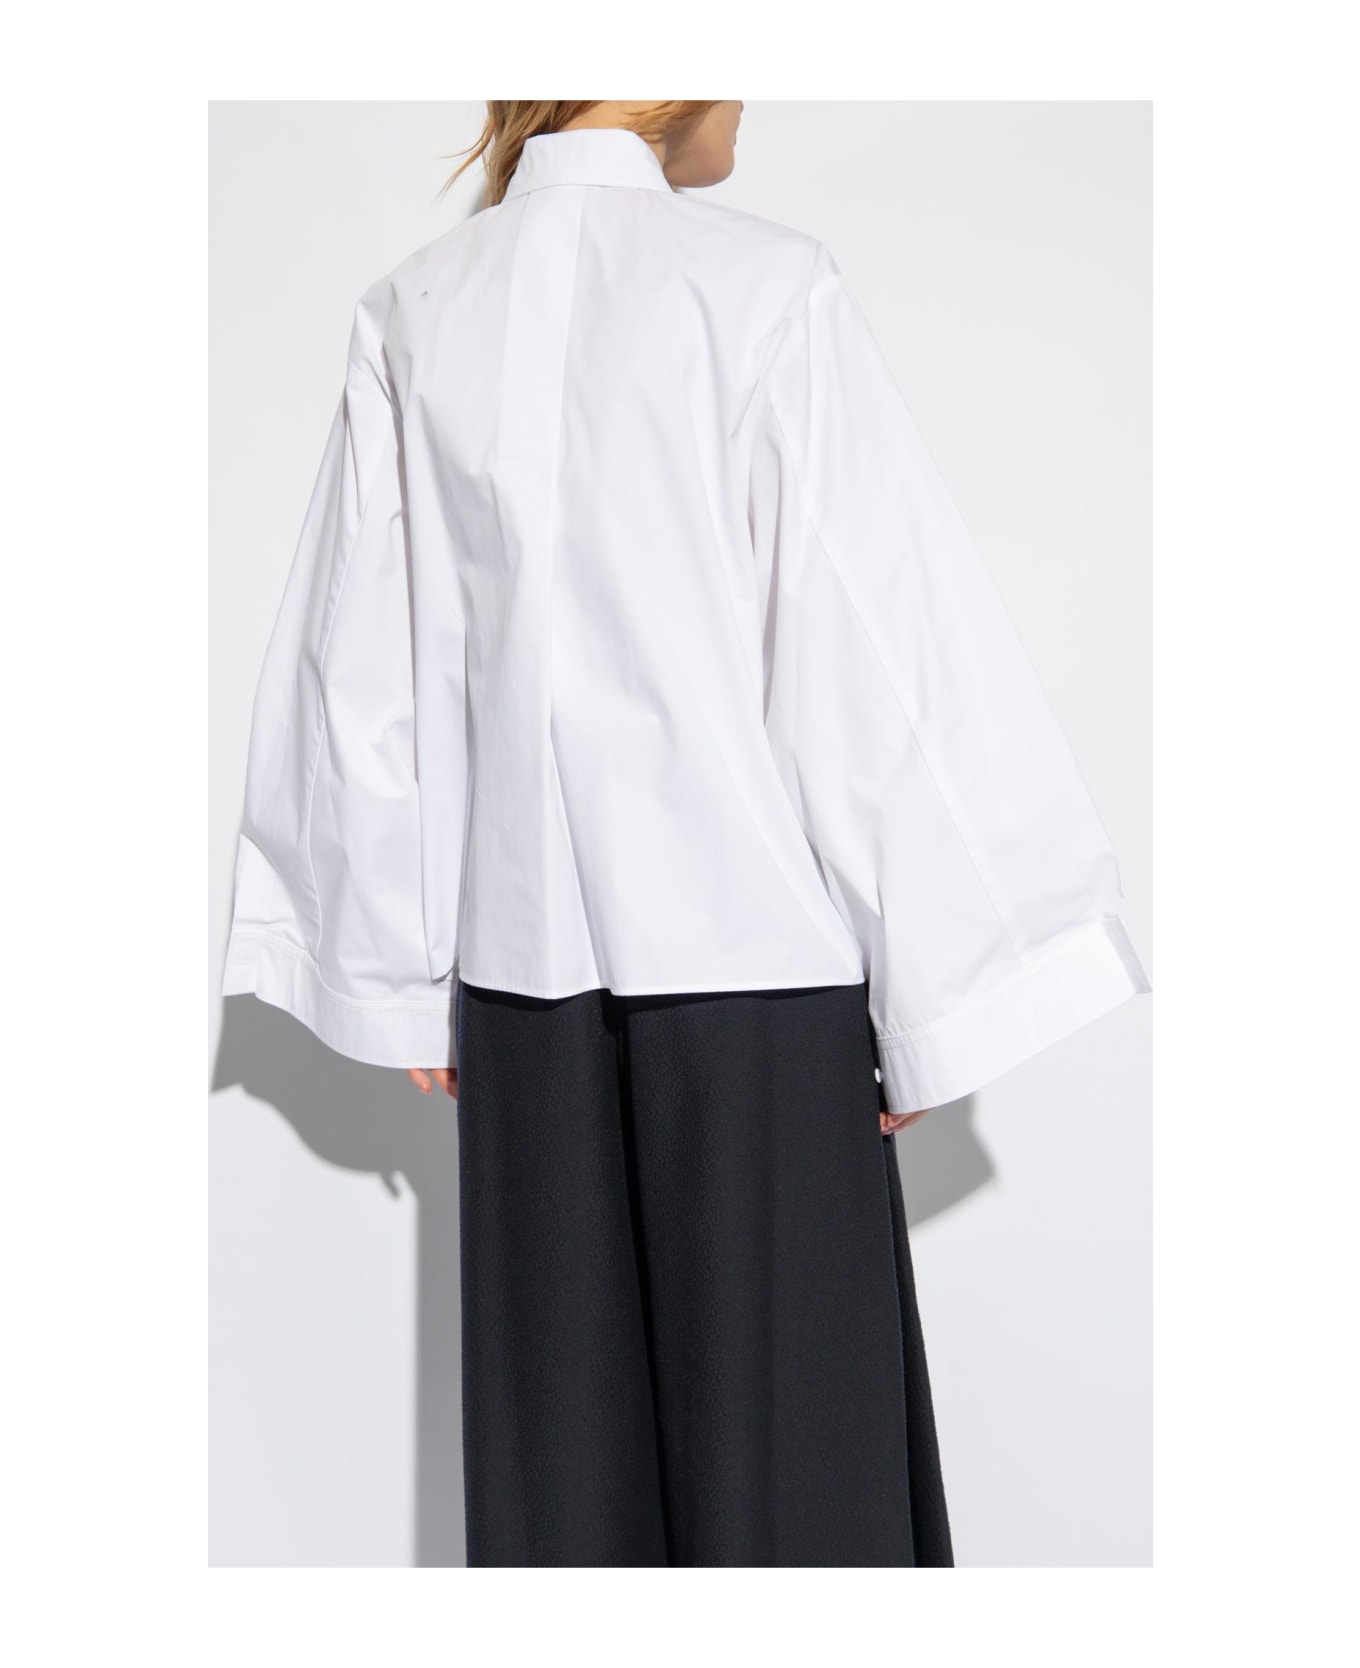 Emporio Armani Oversize Cotton Shirt - White